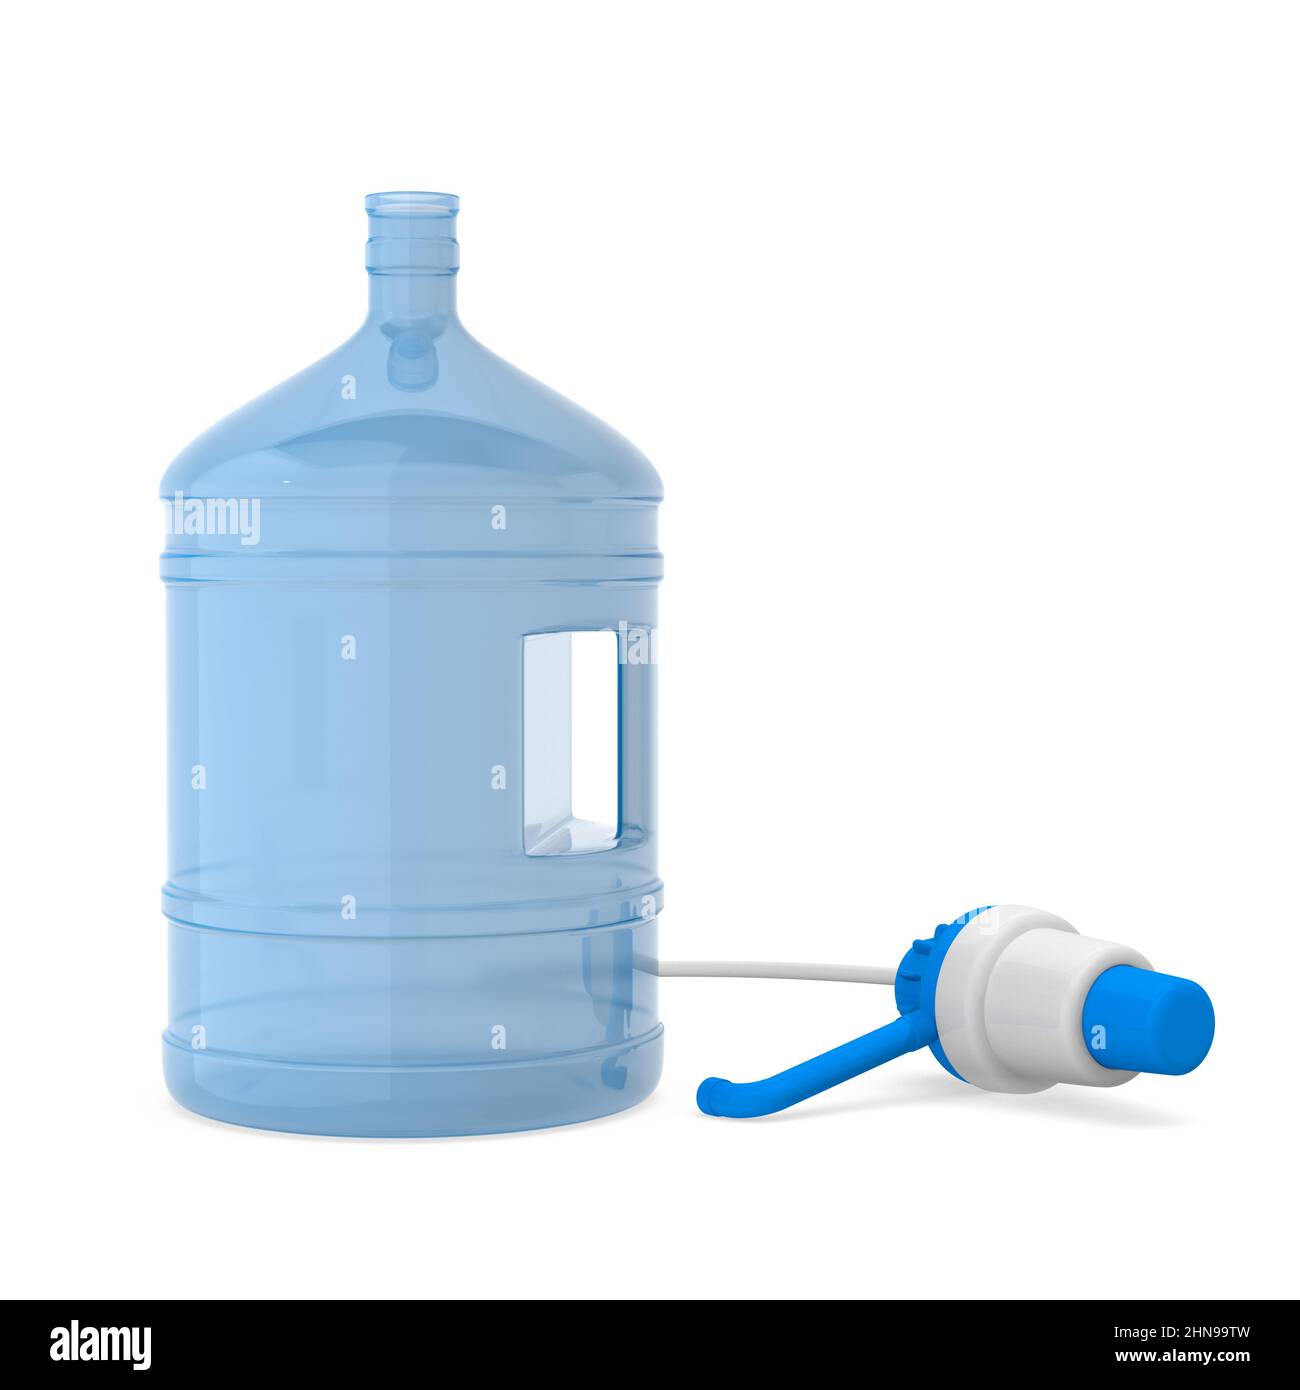 https://c8.alamy.com/comp/2HN99TW/water-bottle-on-white-background-isolated-3d-illustration-2HN99TW.jpg